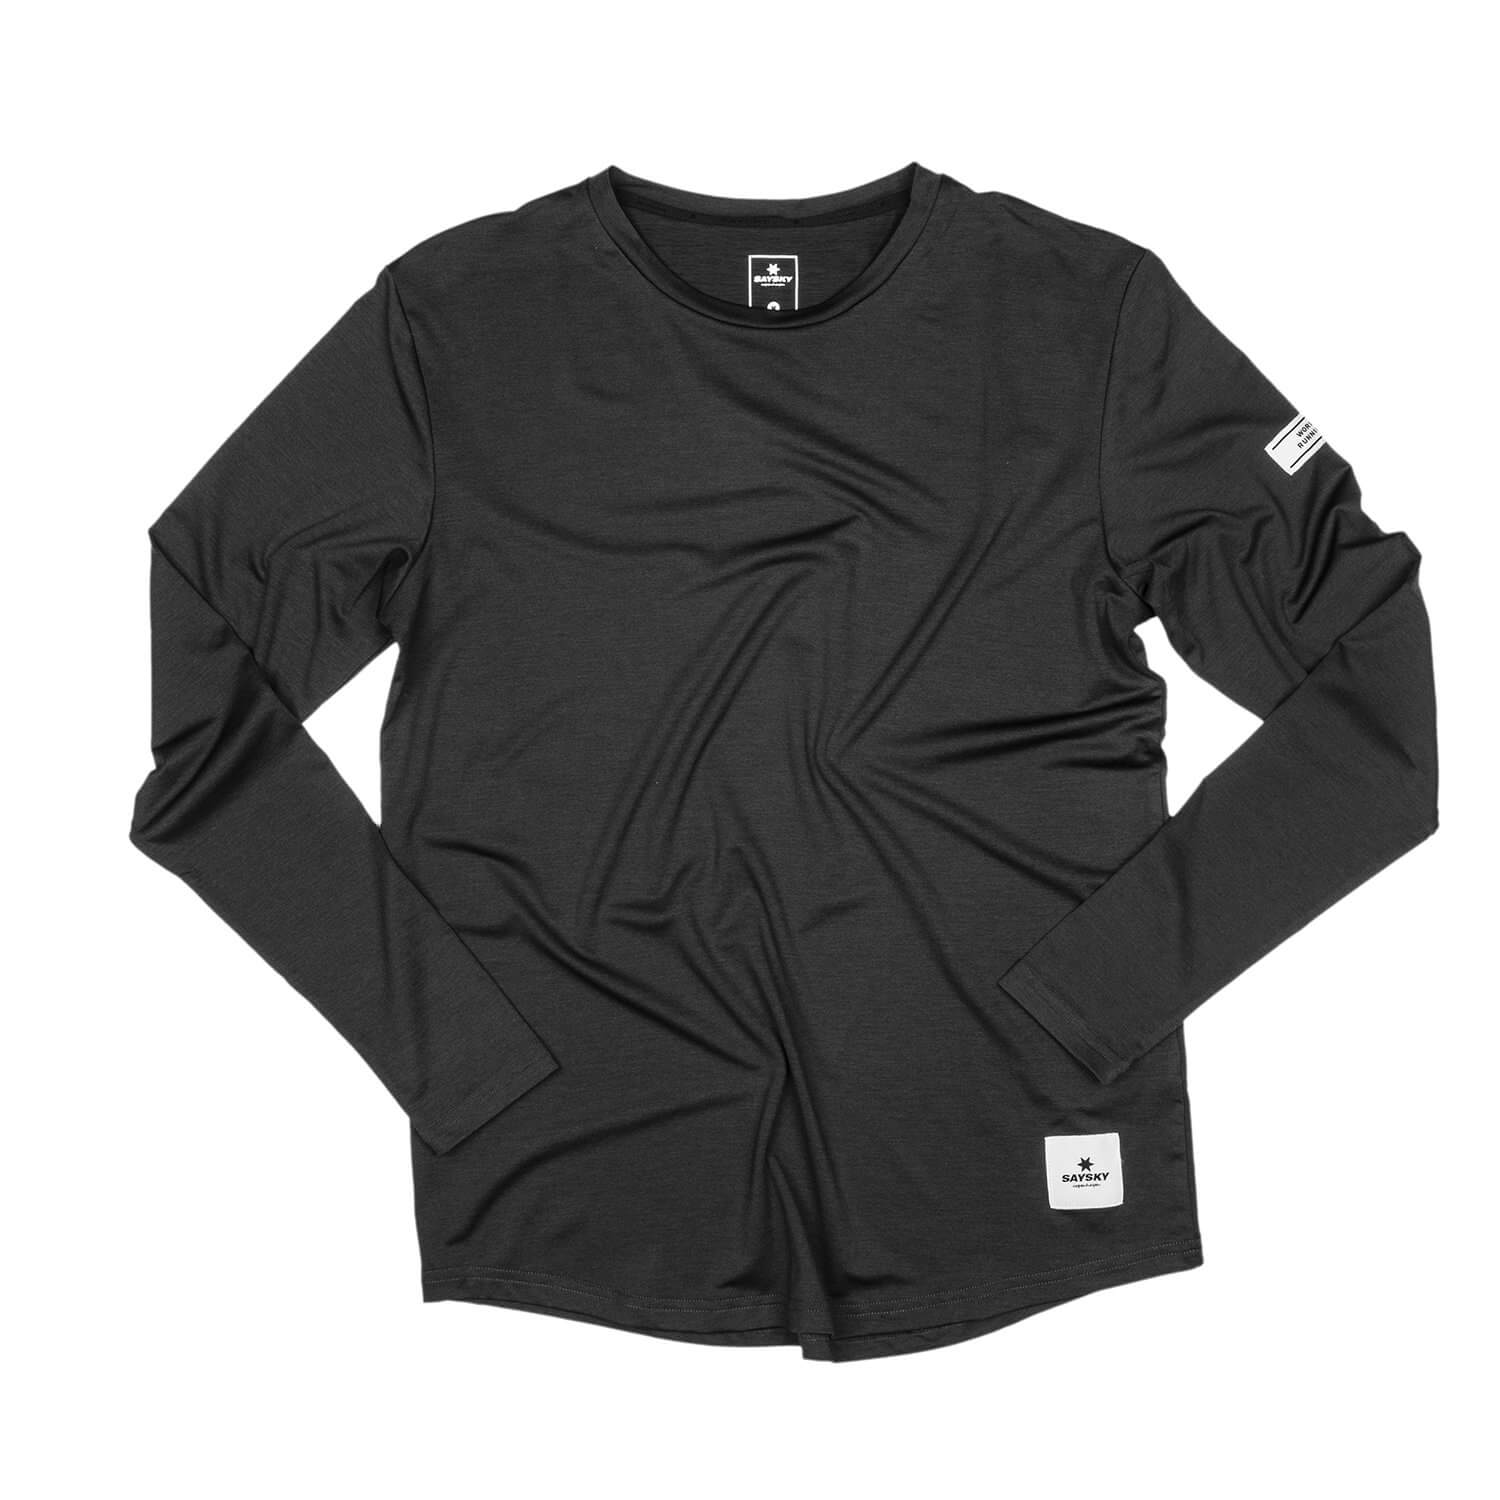 ■ 公式 ■ SAYSKY/セイスカイ ランニングTシャツ(ロングスリーブ) XMRLS01 Pace Longsleeve - Black  Melange [ユニセックス]